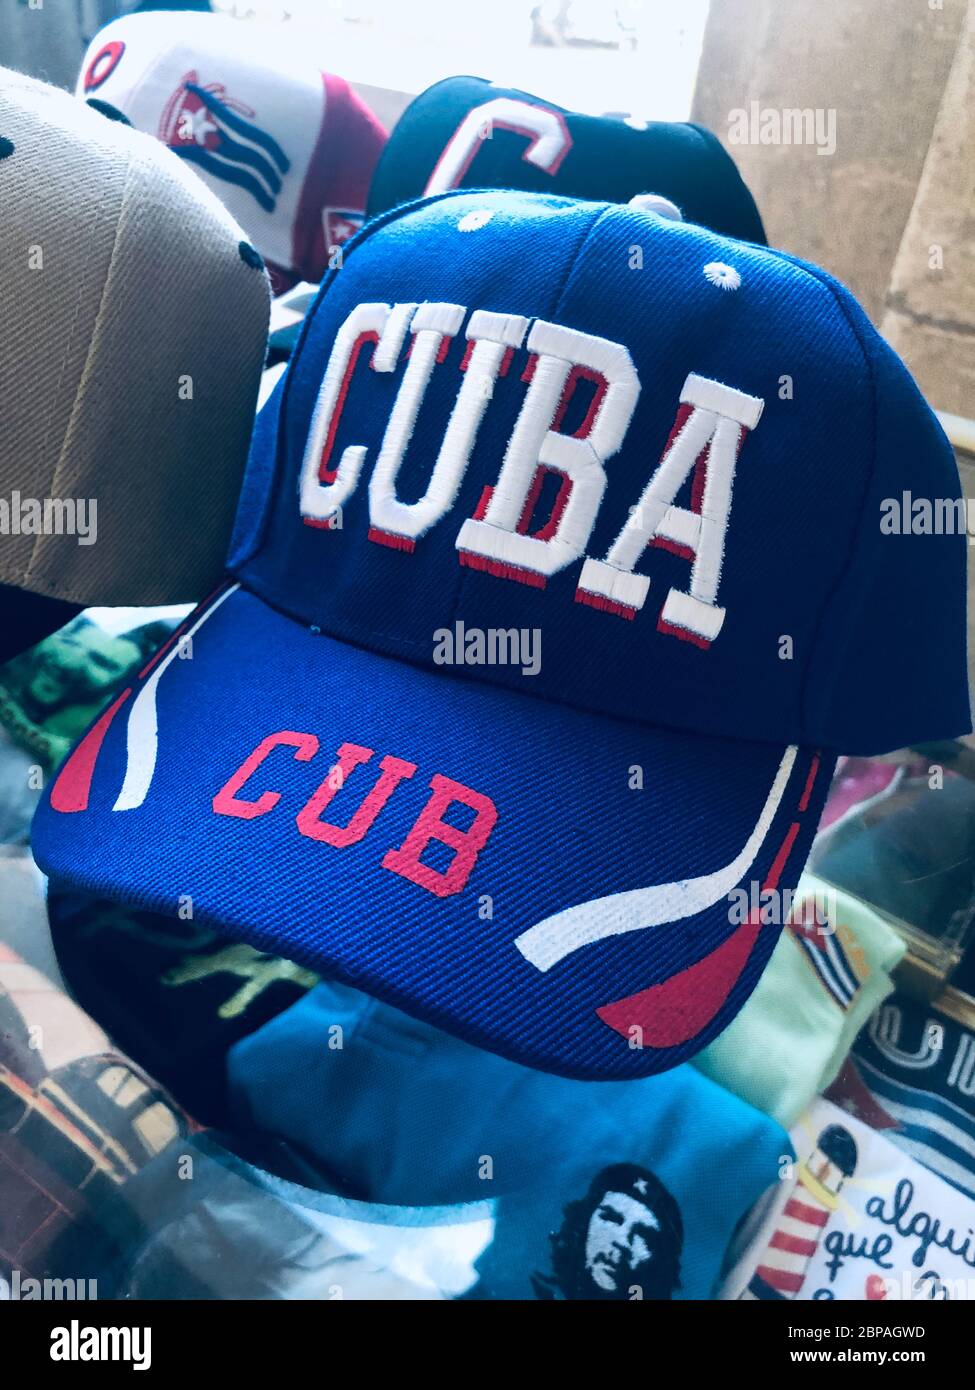 Imagen de una gorra de béisbol azul roja y blanca con Cuba escrita en letras  grandes. Sentado en la parte superior de una caja con otras gorras, y  camisetas con la cara